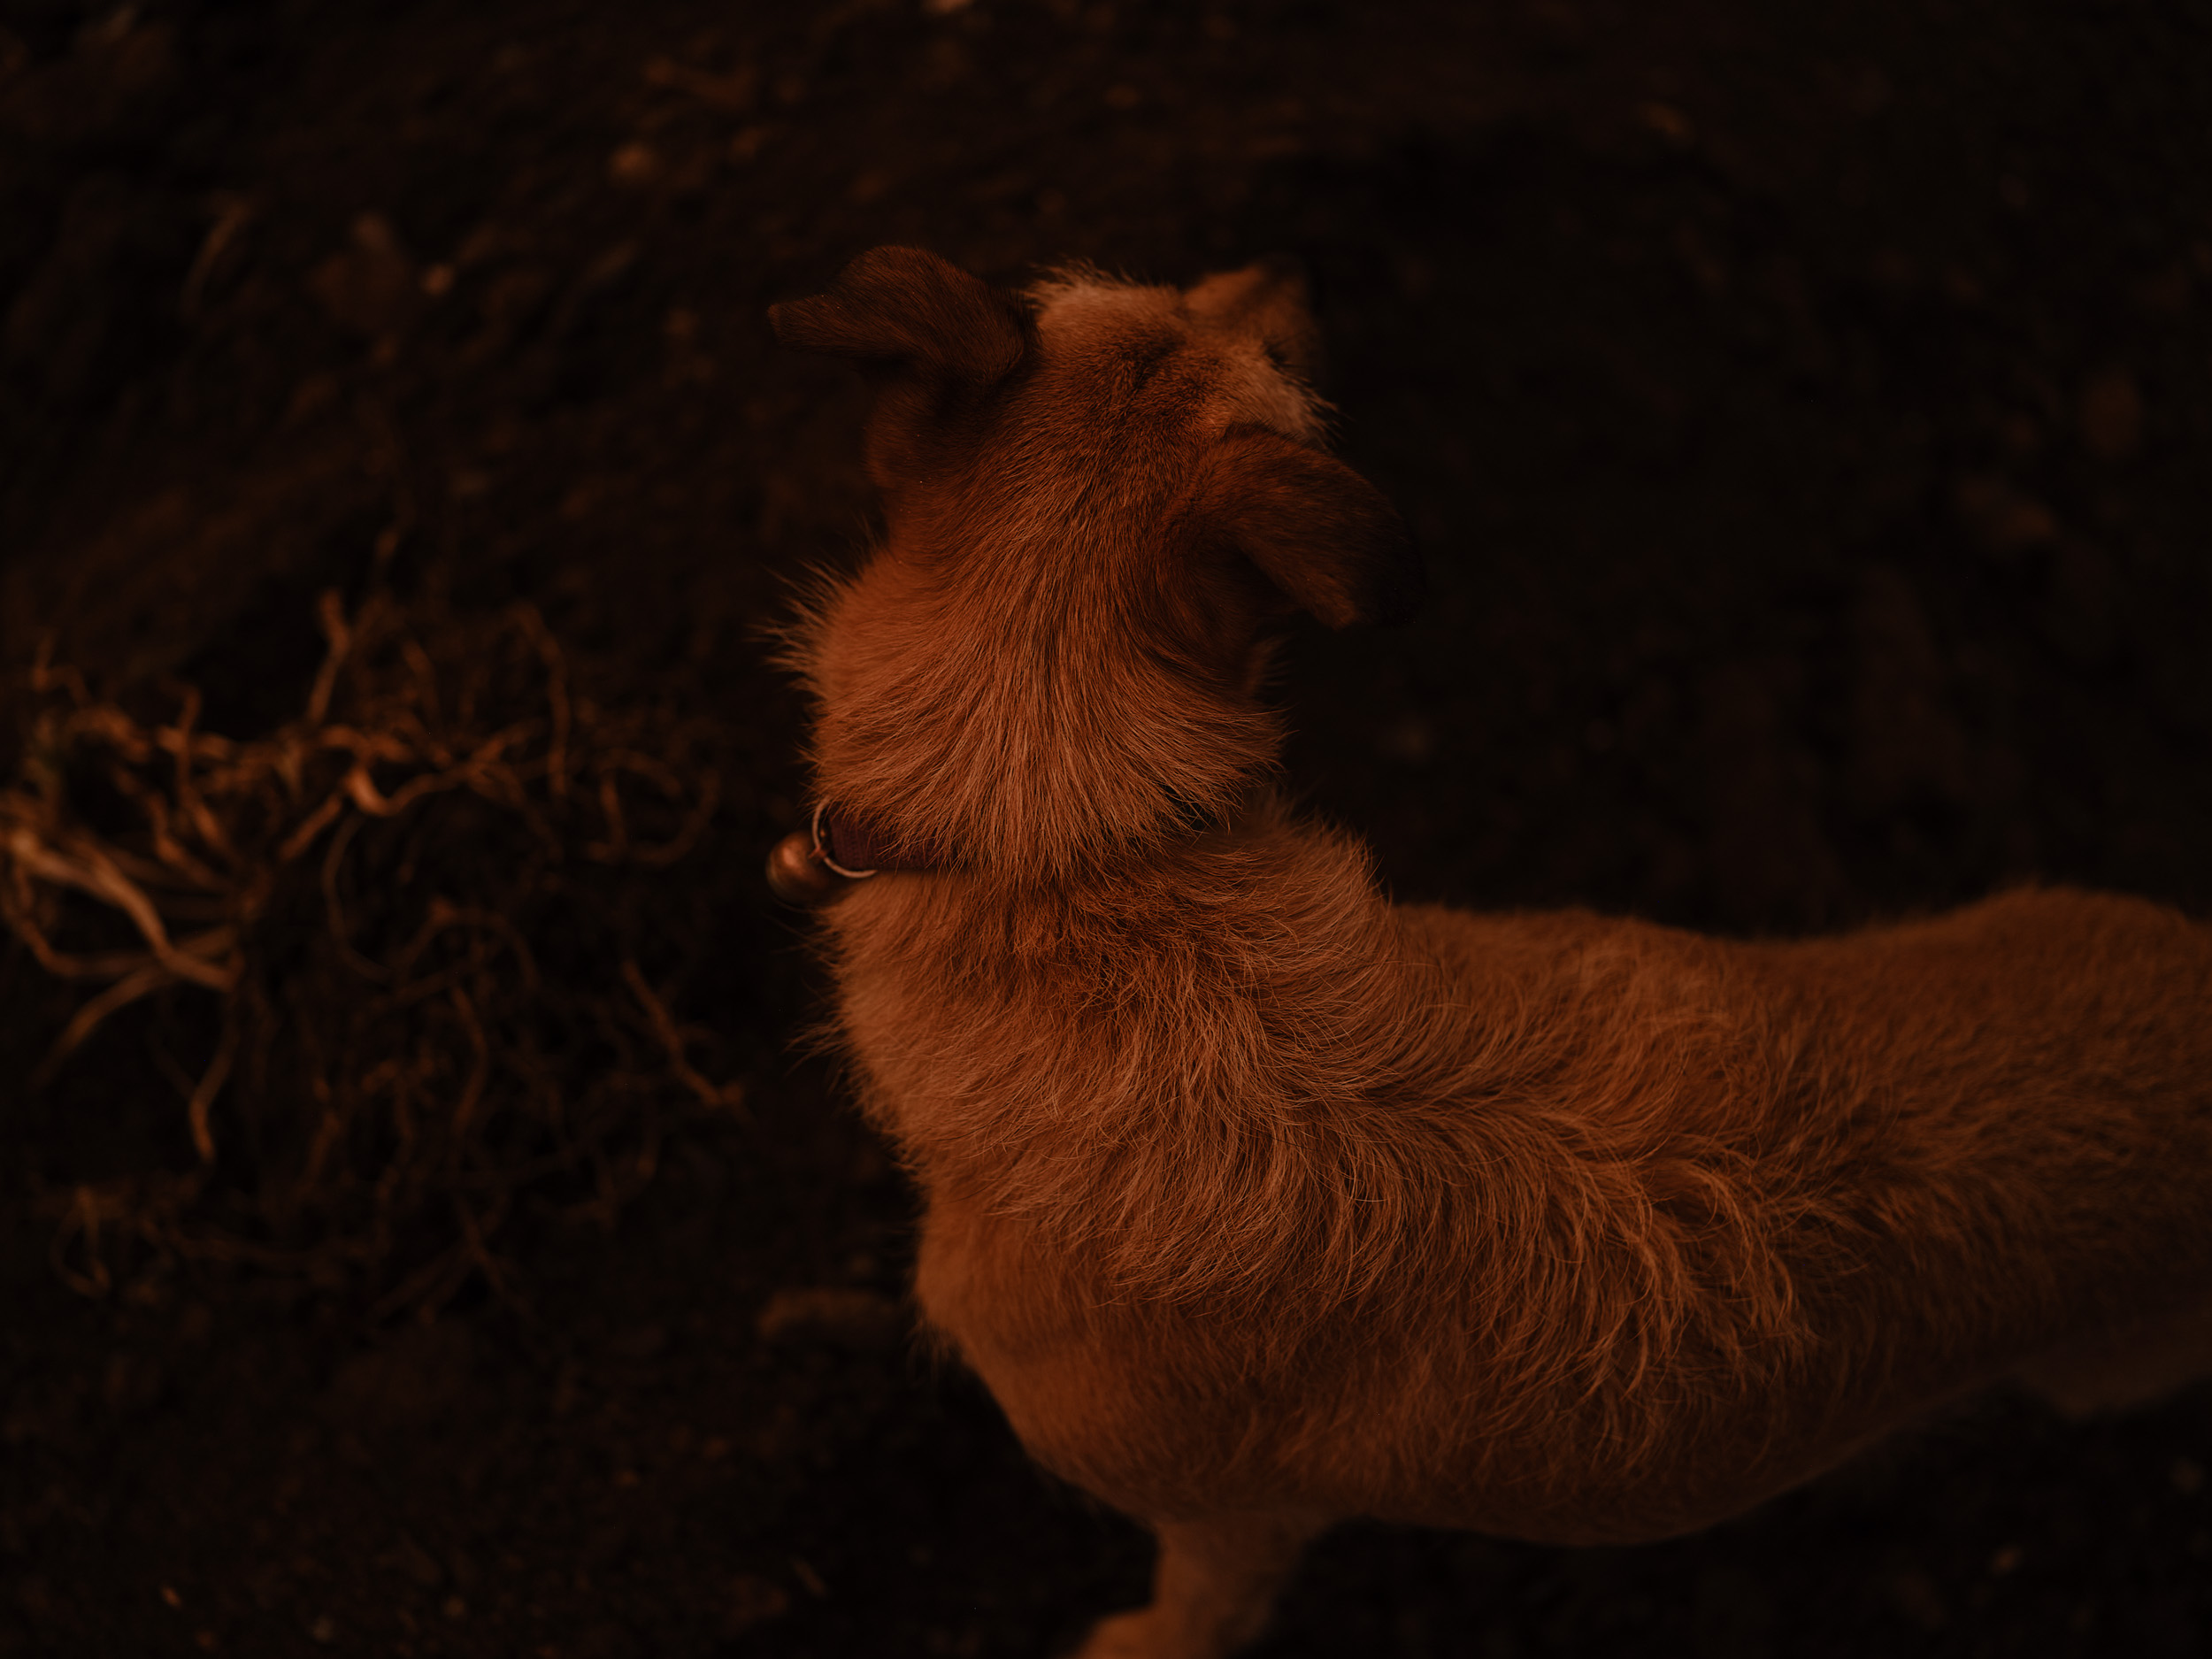 Pina the dog at sunset